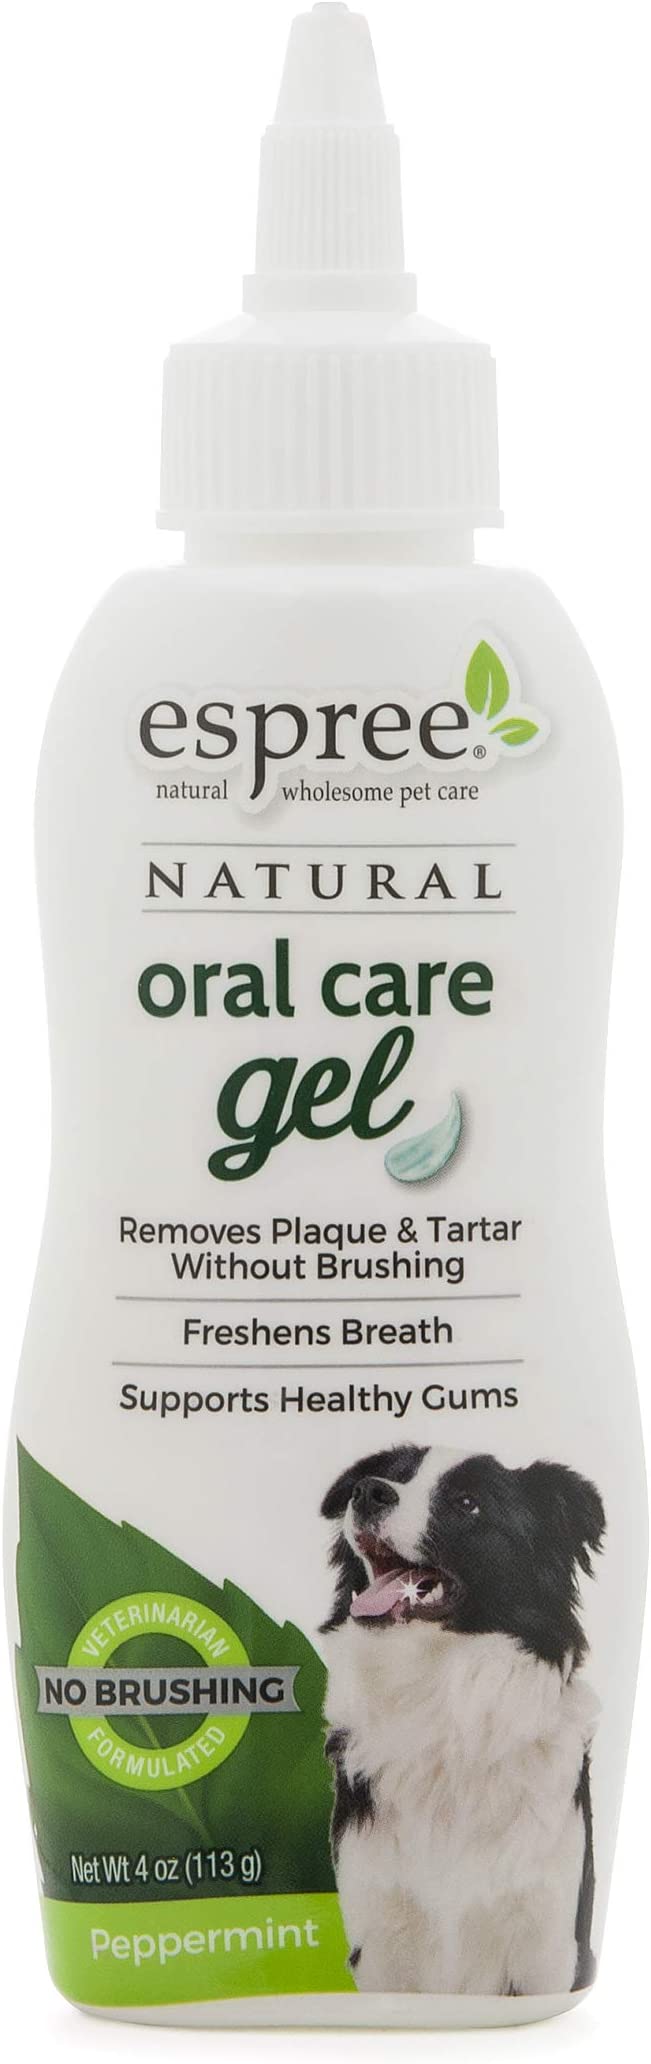 4oz Espree Natural Oral Care Gel